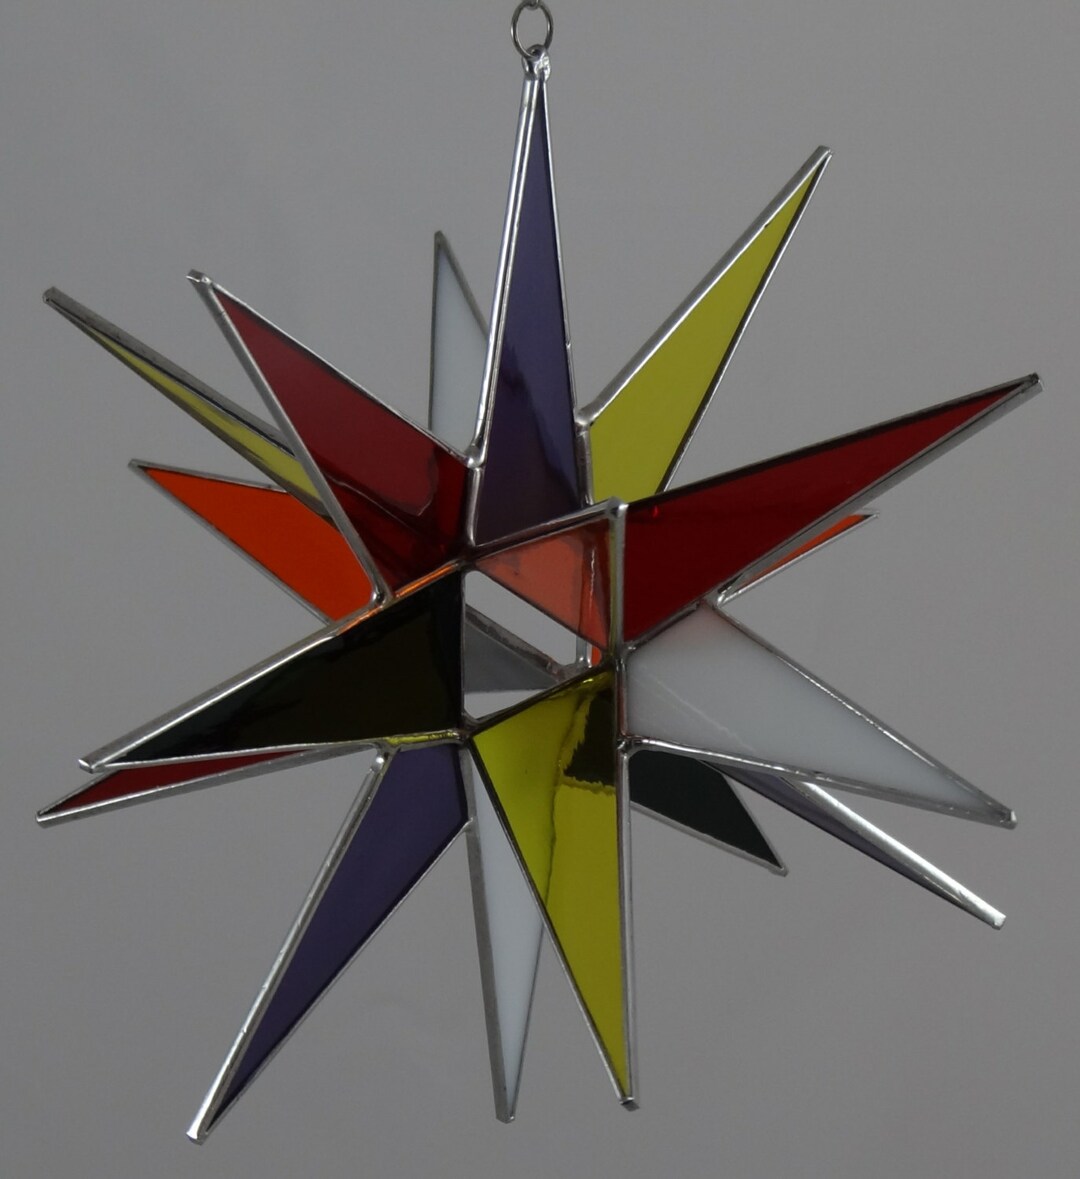 Moravian Star Hanging 12 Point Blue Iridescent Glass Christmas Ornament  Star Gift Wedding Suncatcher Bethlehem